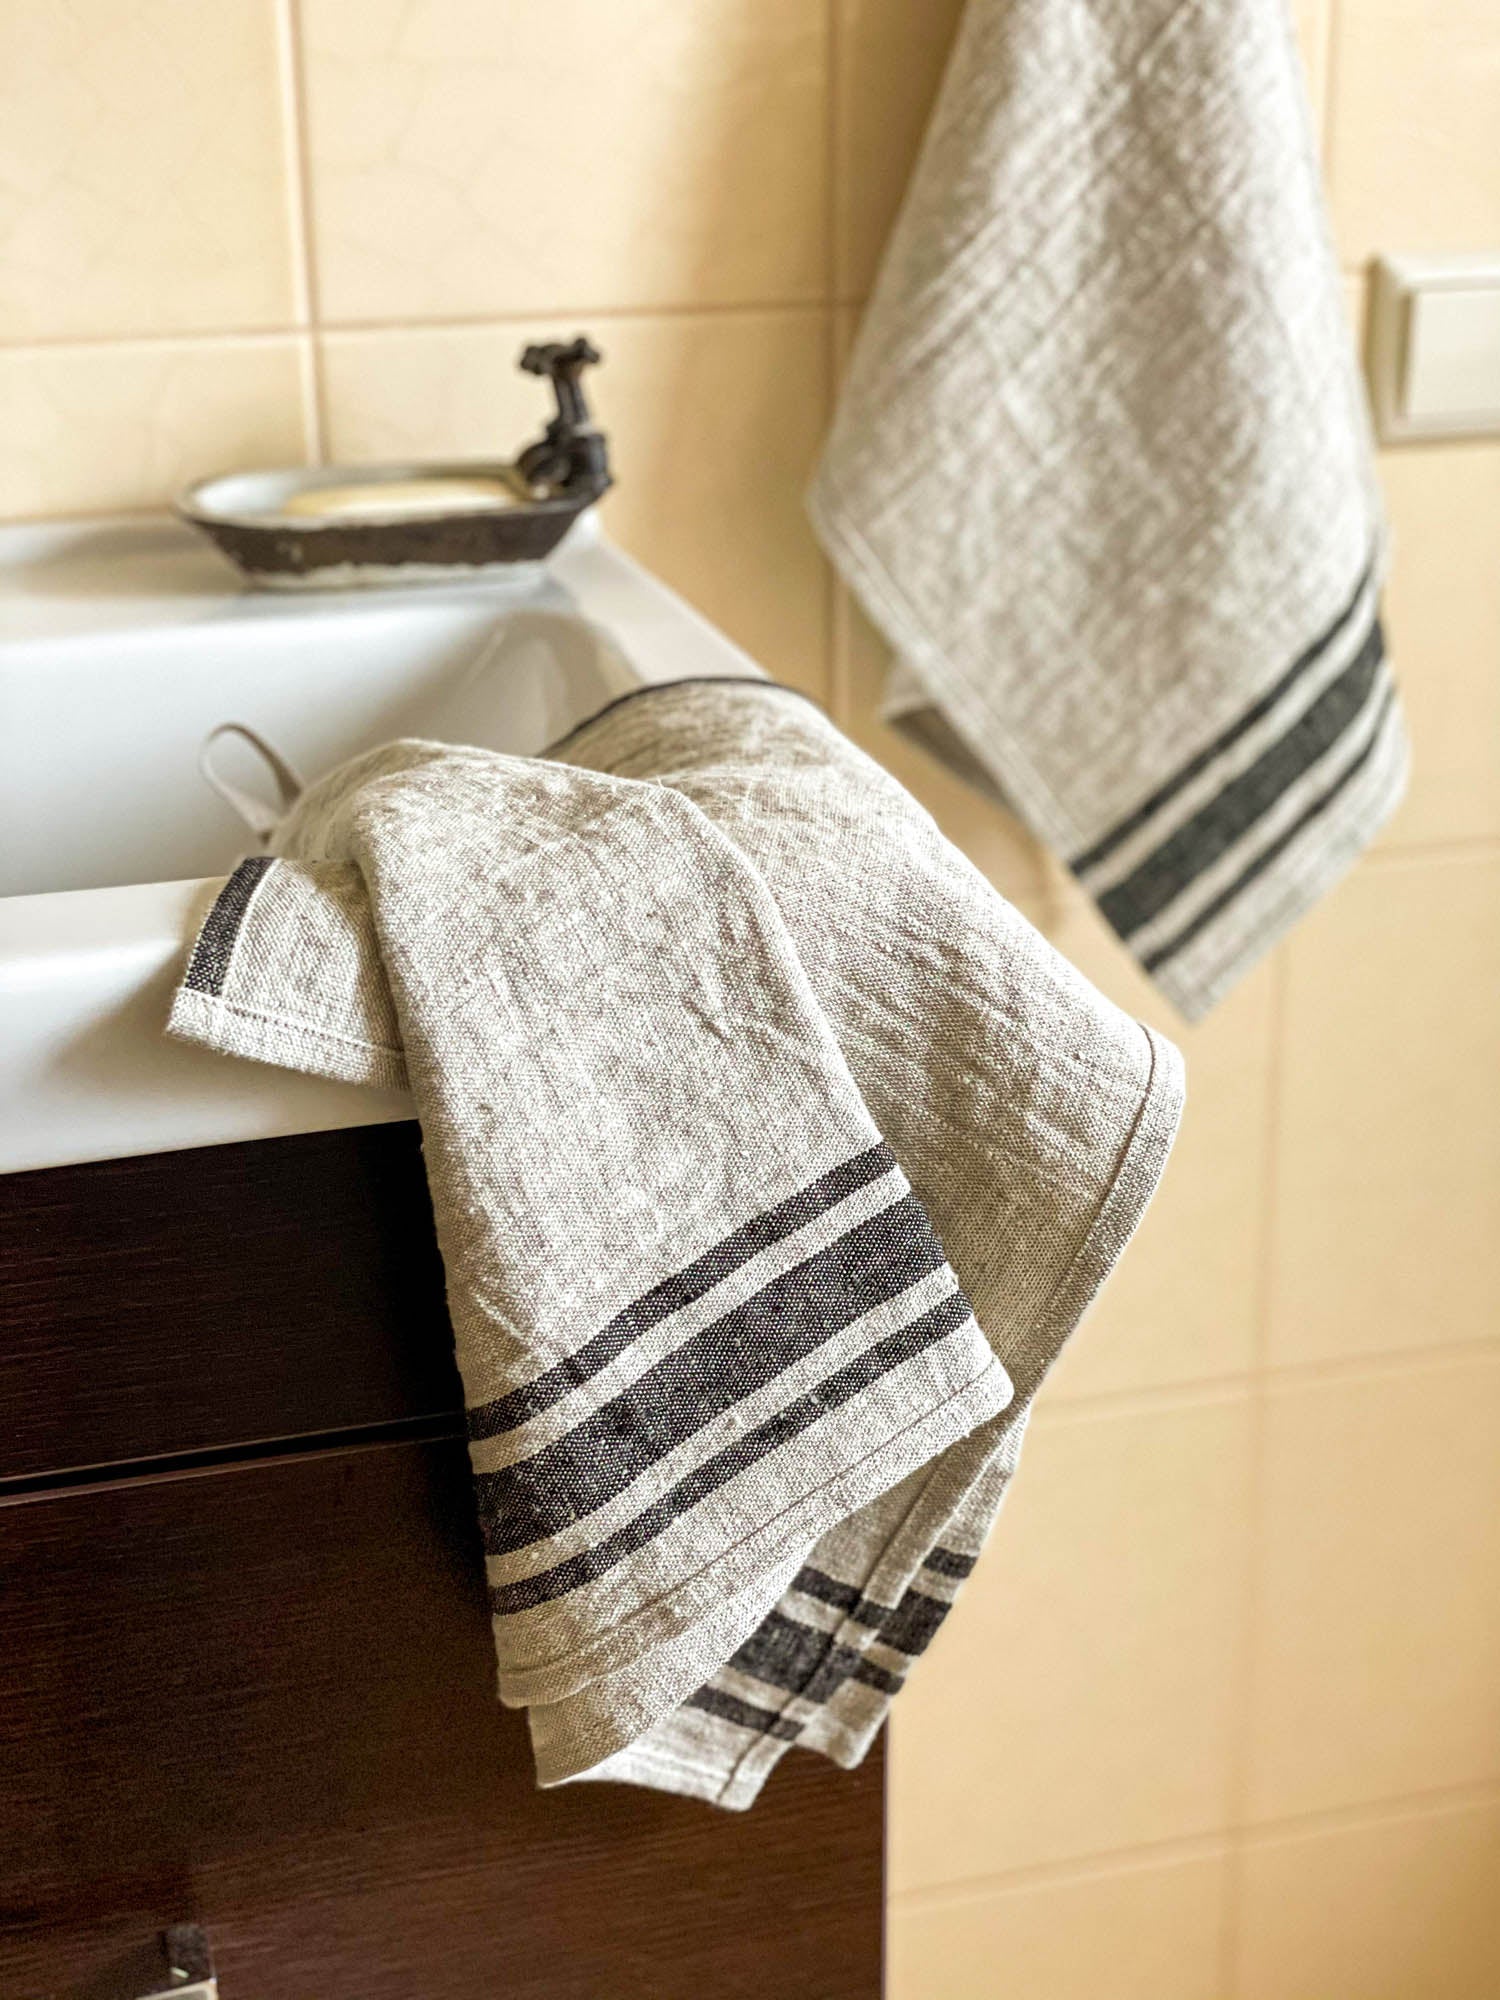 Bath / Hand Towels – Express Linen